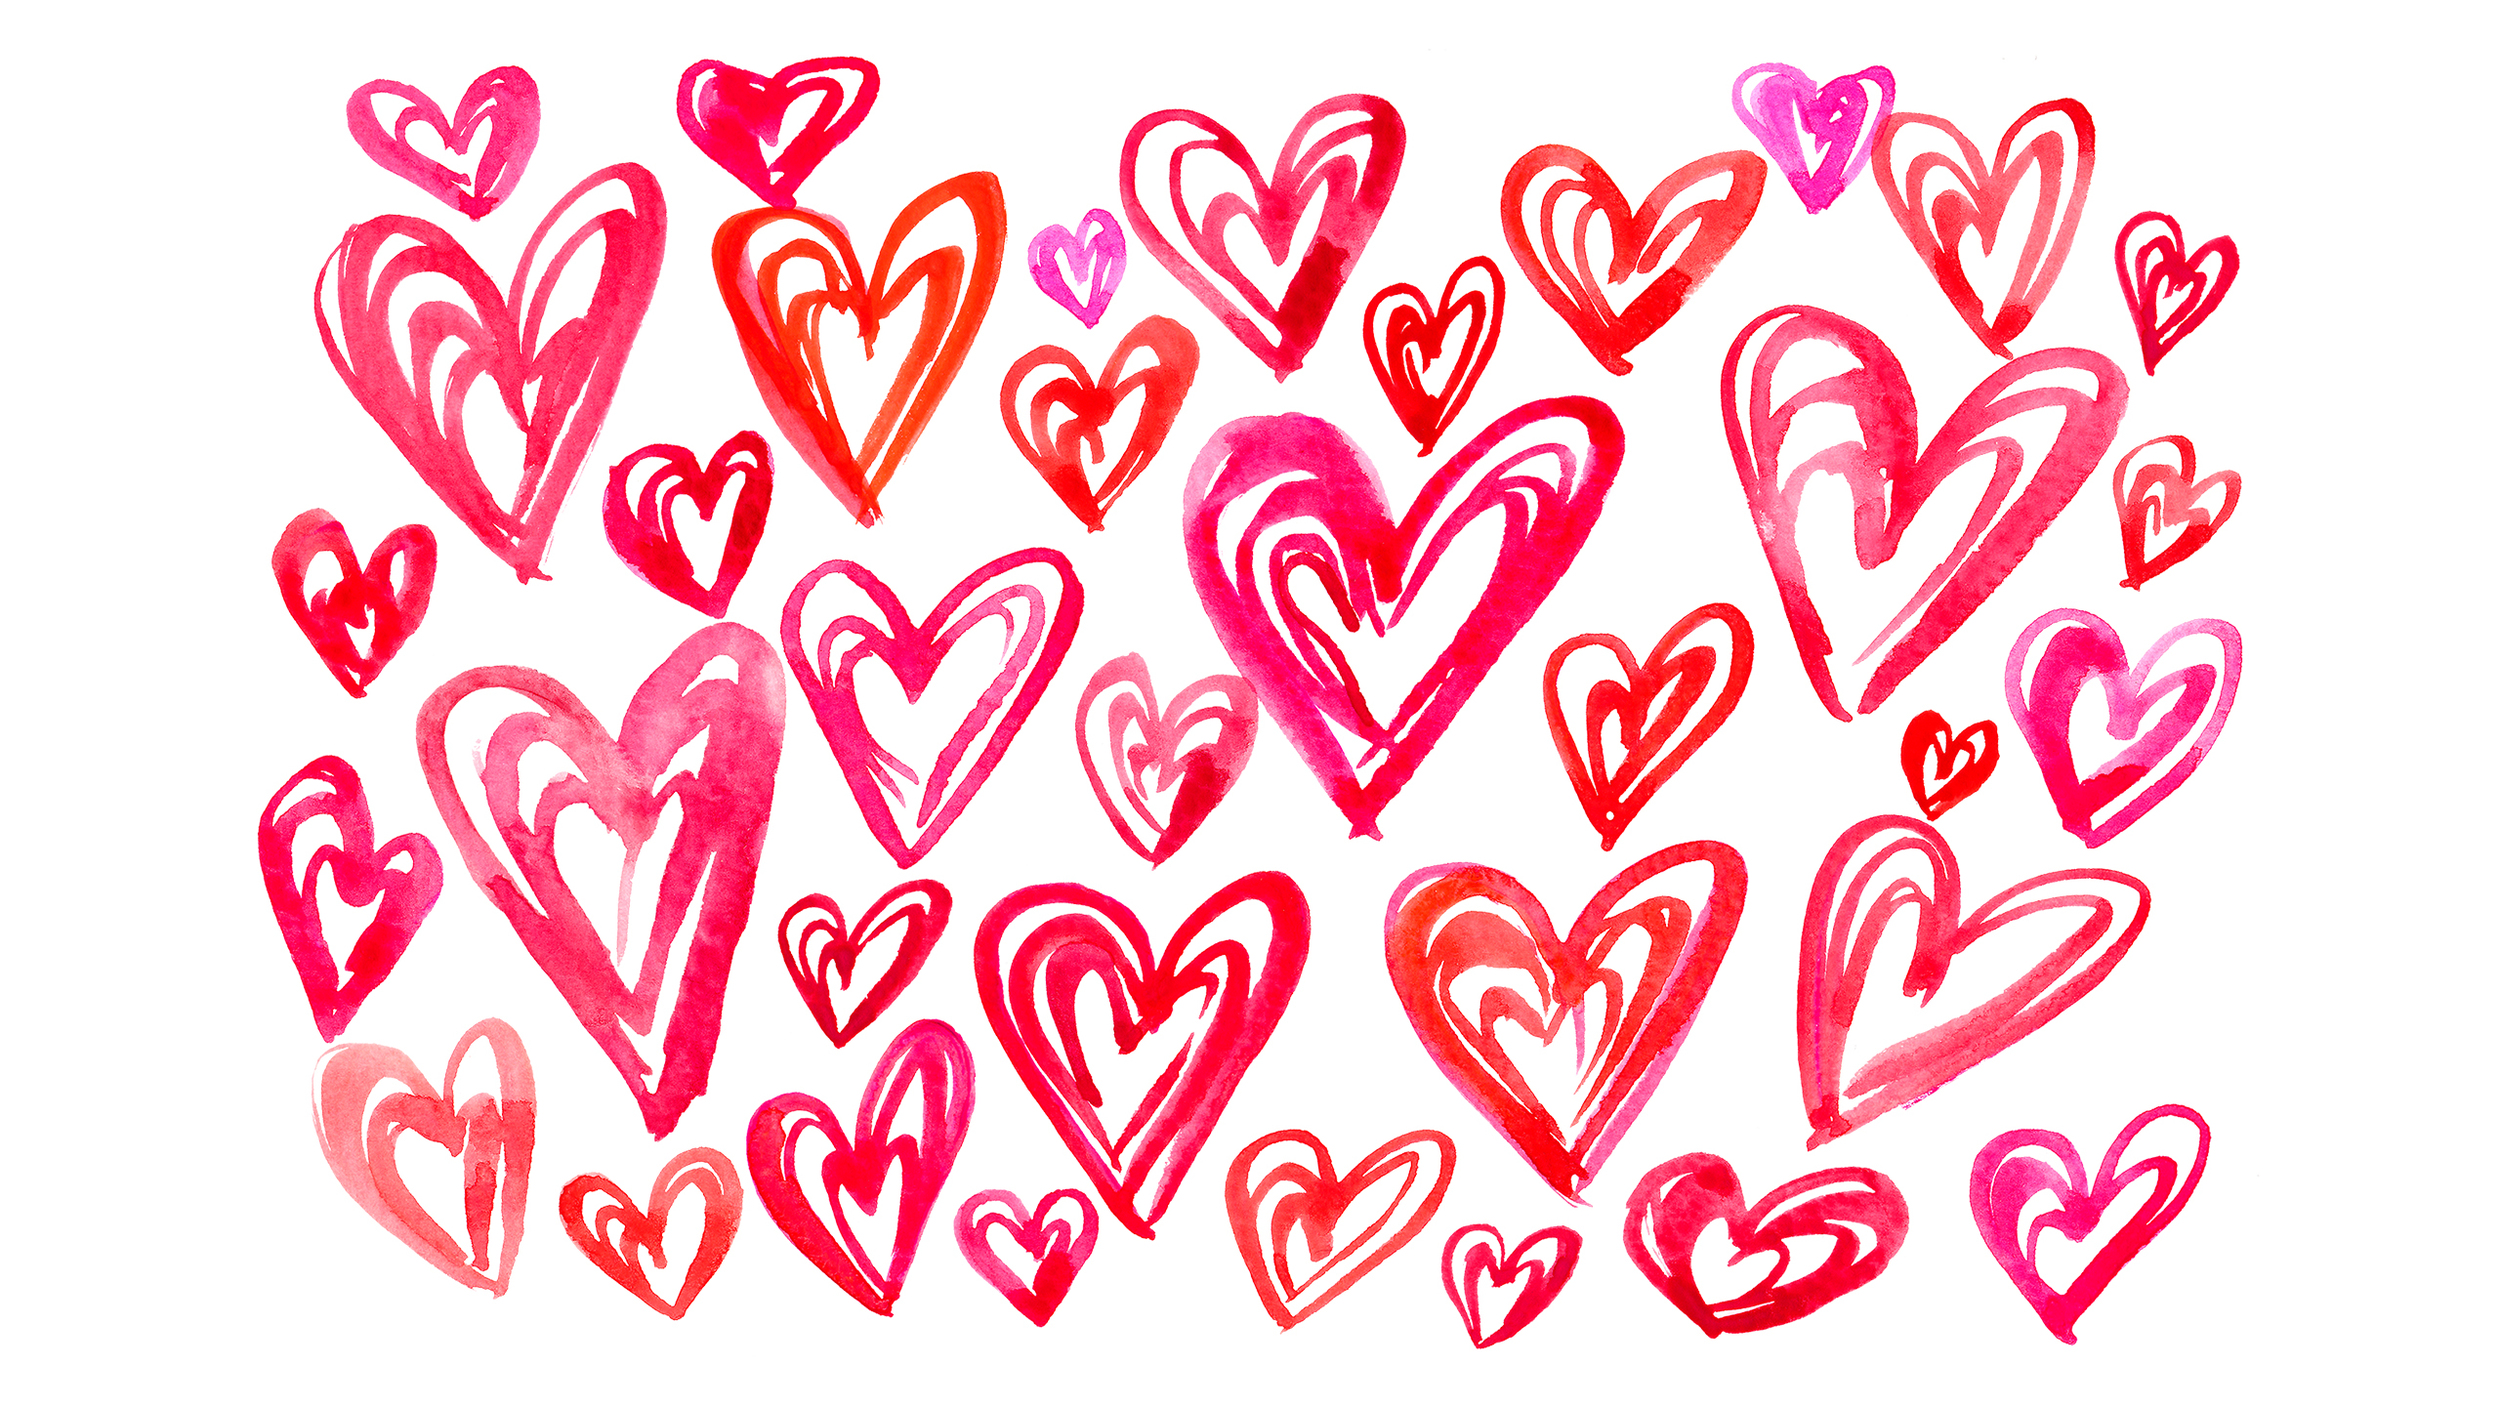 Những bức tranh lãng mạn và ngộ nghĩnh với chủ đề Valentine sẽ làm bạn liên tưởng đến những nụ cười và niềm hạnh phúc cùng người yêu của mình. Bryna Shields đã tạo ra những tác phẩm nghệ thuật đầy cảm hứng để kỷ niệm ngày lễ tình yêu đầy ý nghĩa. Hãy chia sẻ tình yêu của bạn với những bức tranh vui nhộn này! 